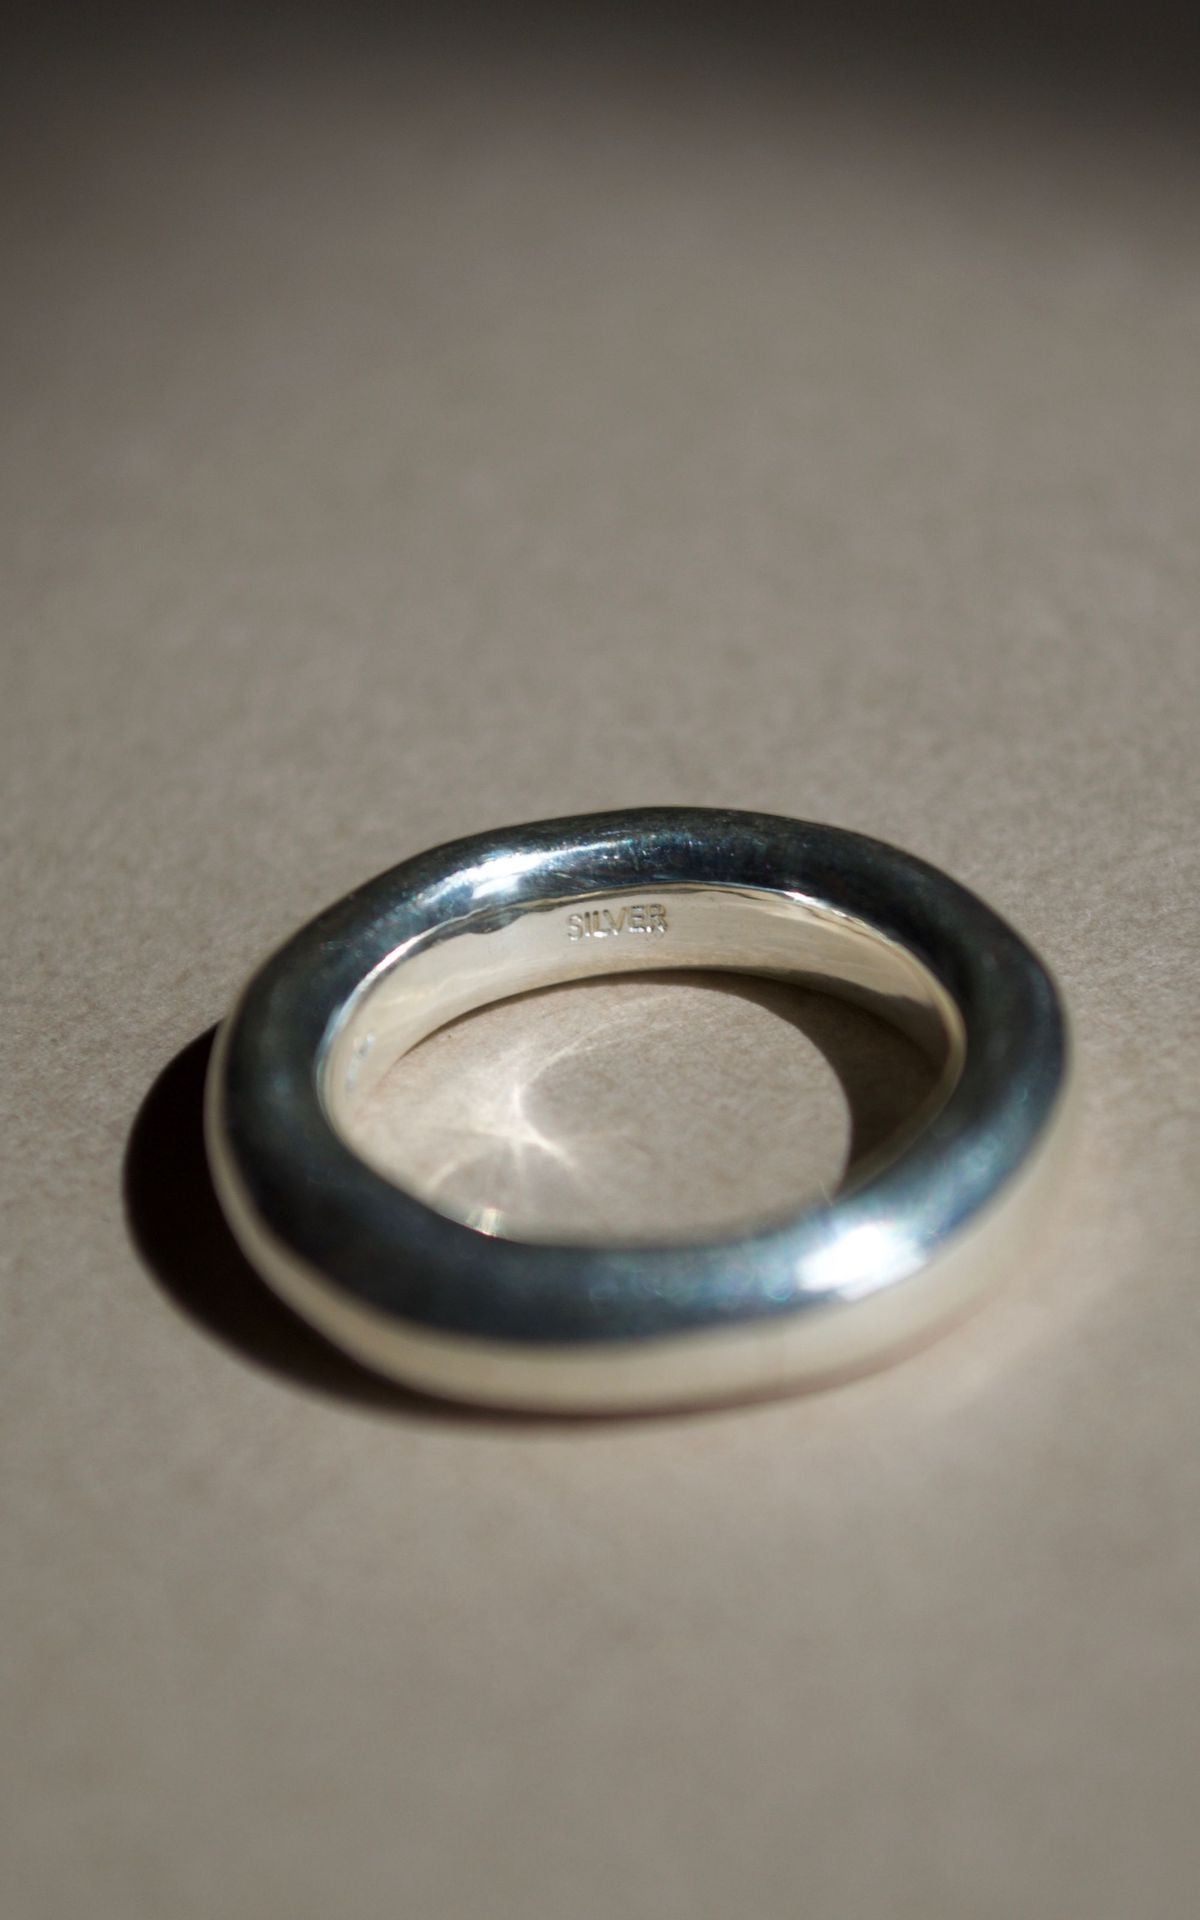 Plain volume ring